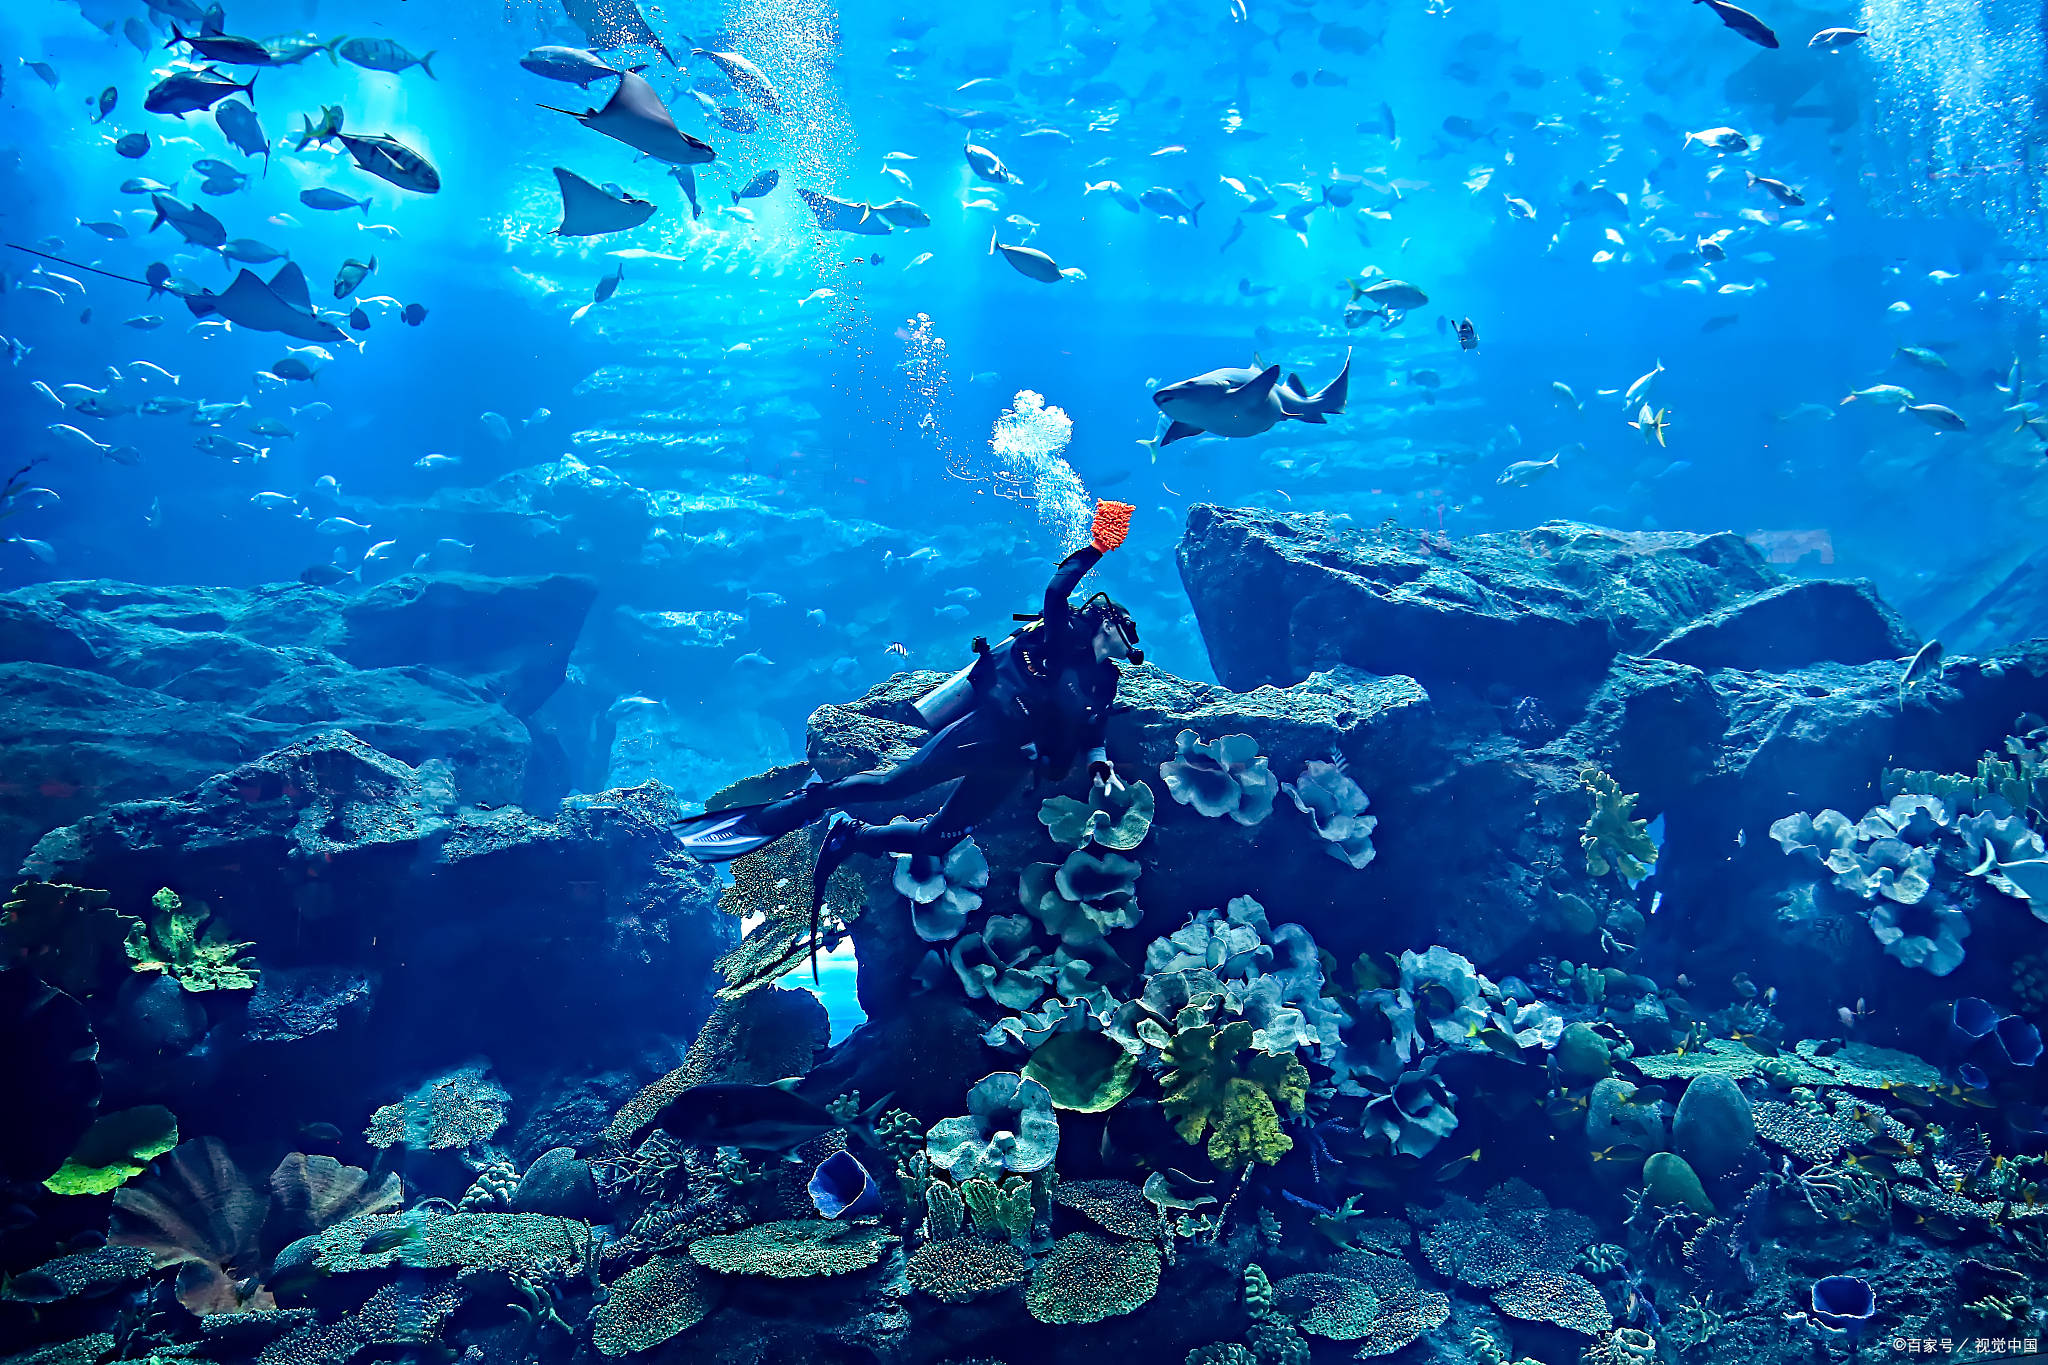 海底世界拥有丰富多样的海洋生物,包括各类鱼类,海龟,水母等